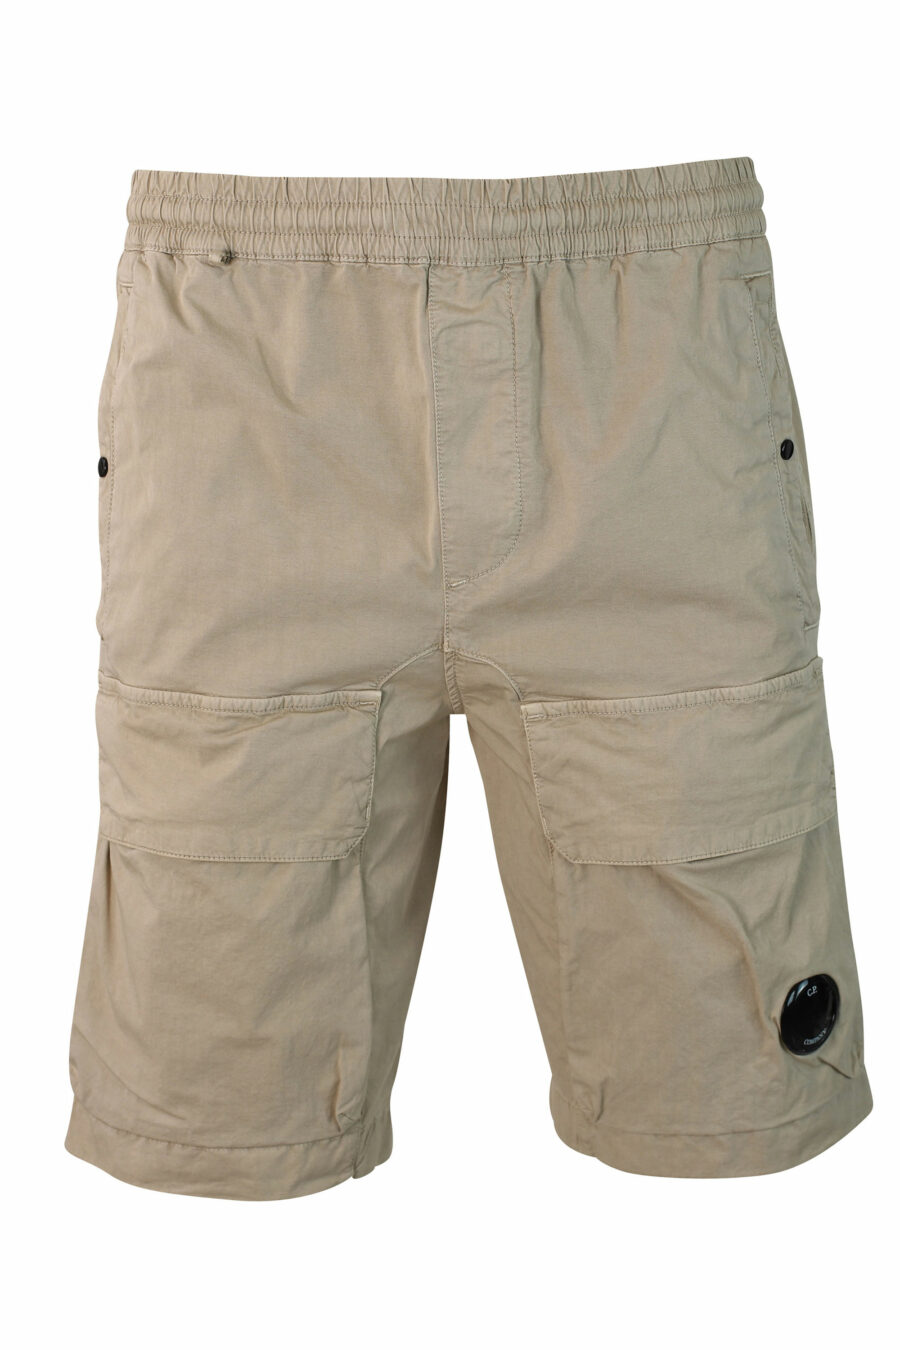 Short beige extensible avec poches avant et mini-logo circulaire - IMG 9907